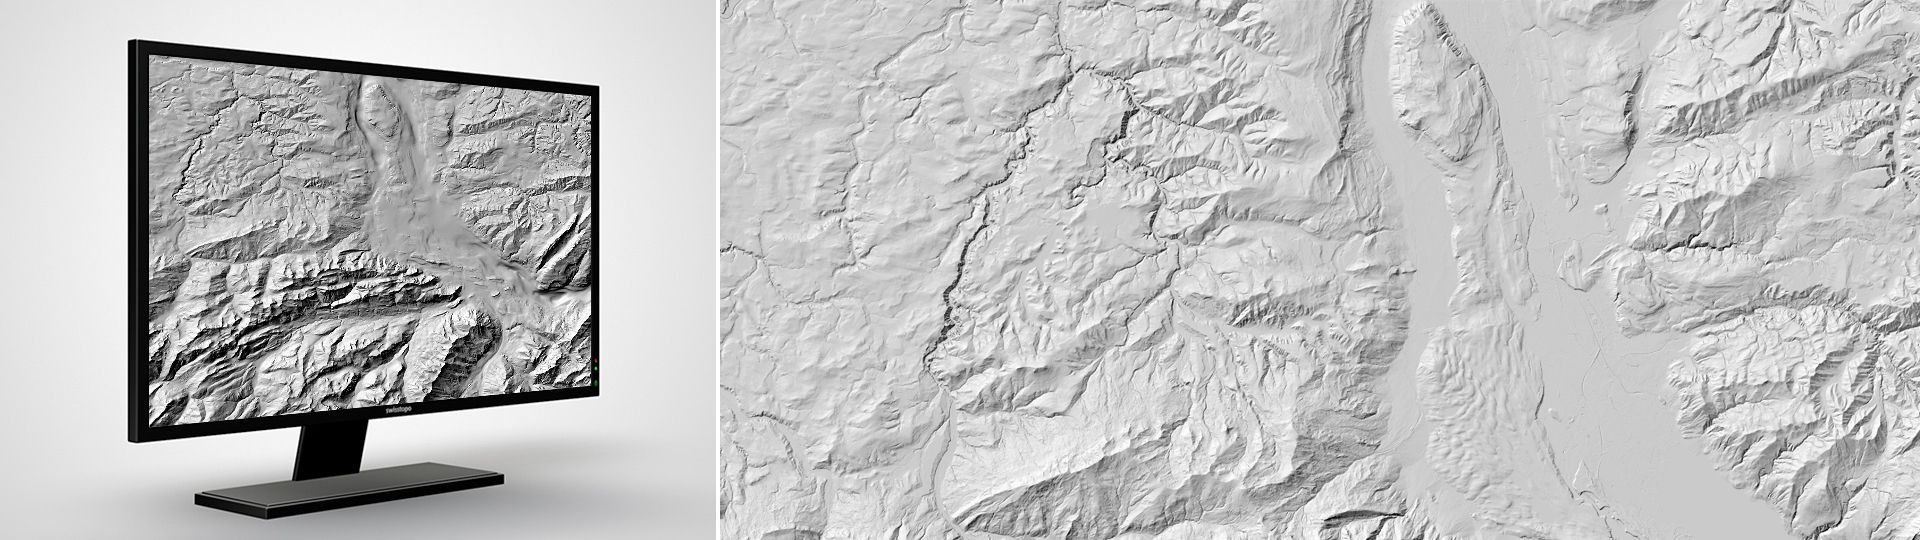 Modèle d’altitude du toit du rocher: le modèle d’altitude du toit du rocher numérique du bassin molassique et des grandes vallées alpines